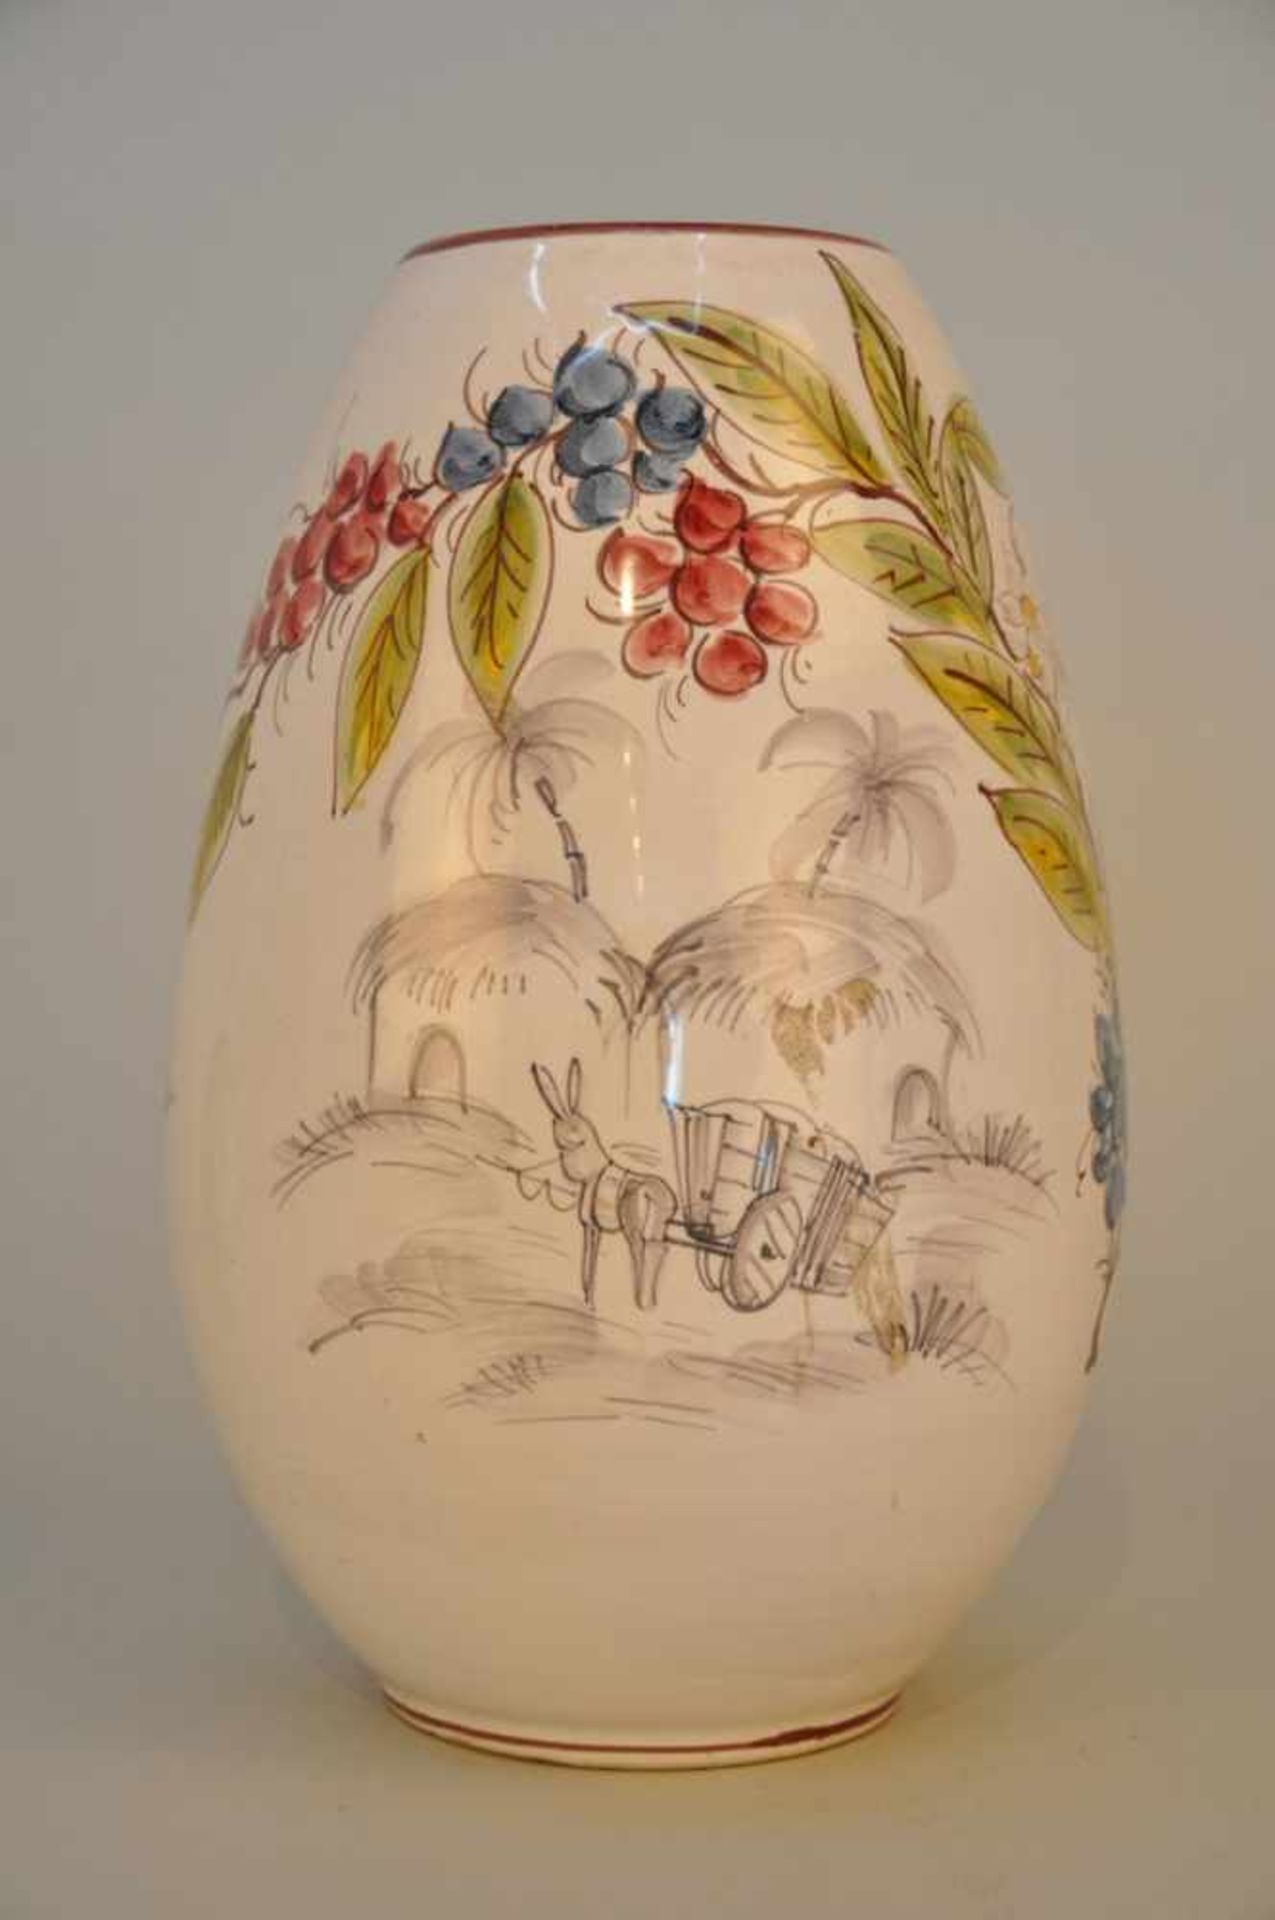 Blumenvase "Machwitz Kaffee". Ulmer Keramik, 1950/70er Jahre. Höhe ca. 27 cm, Stand 8,5 cm. - Image 2 of 5